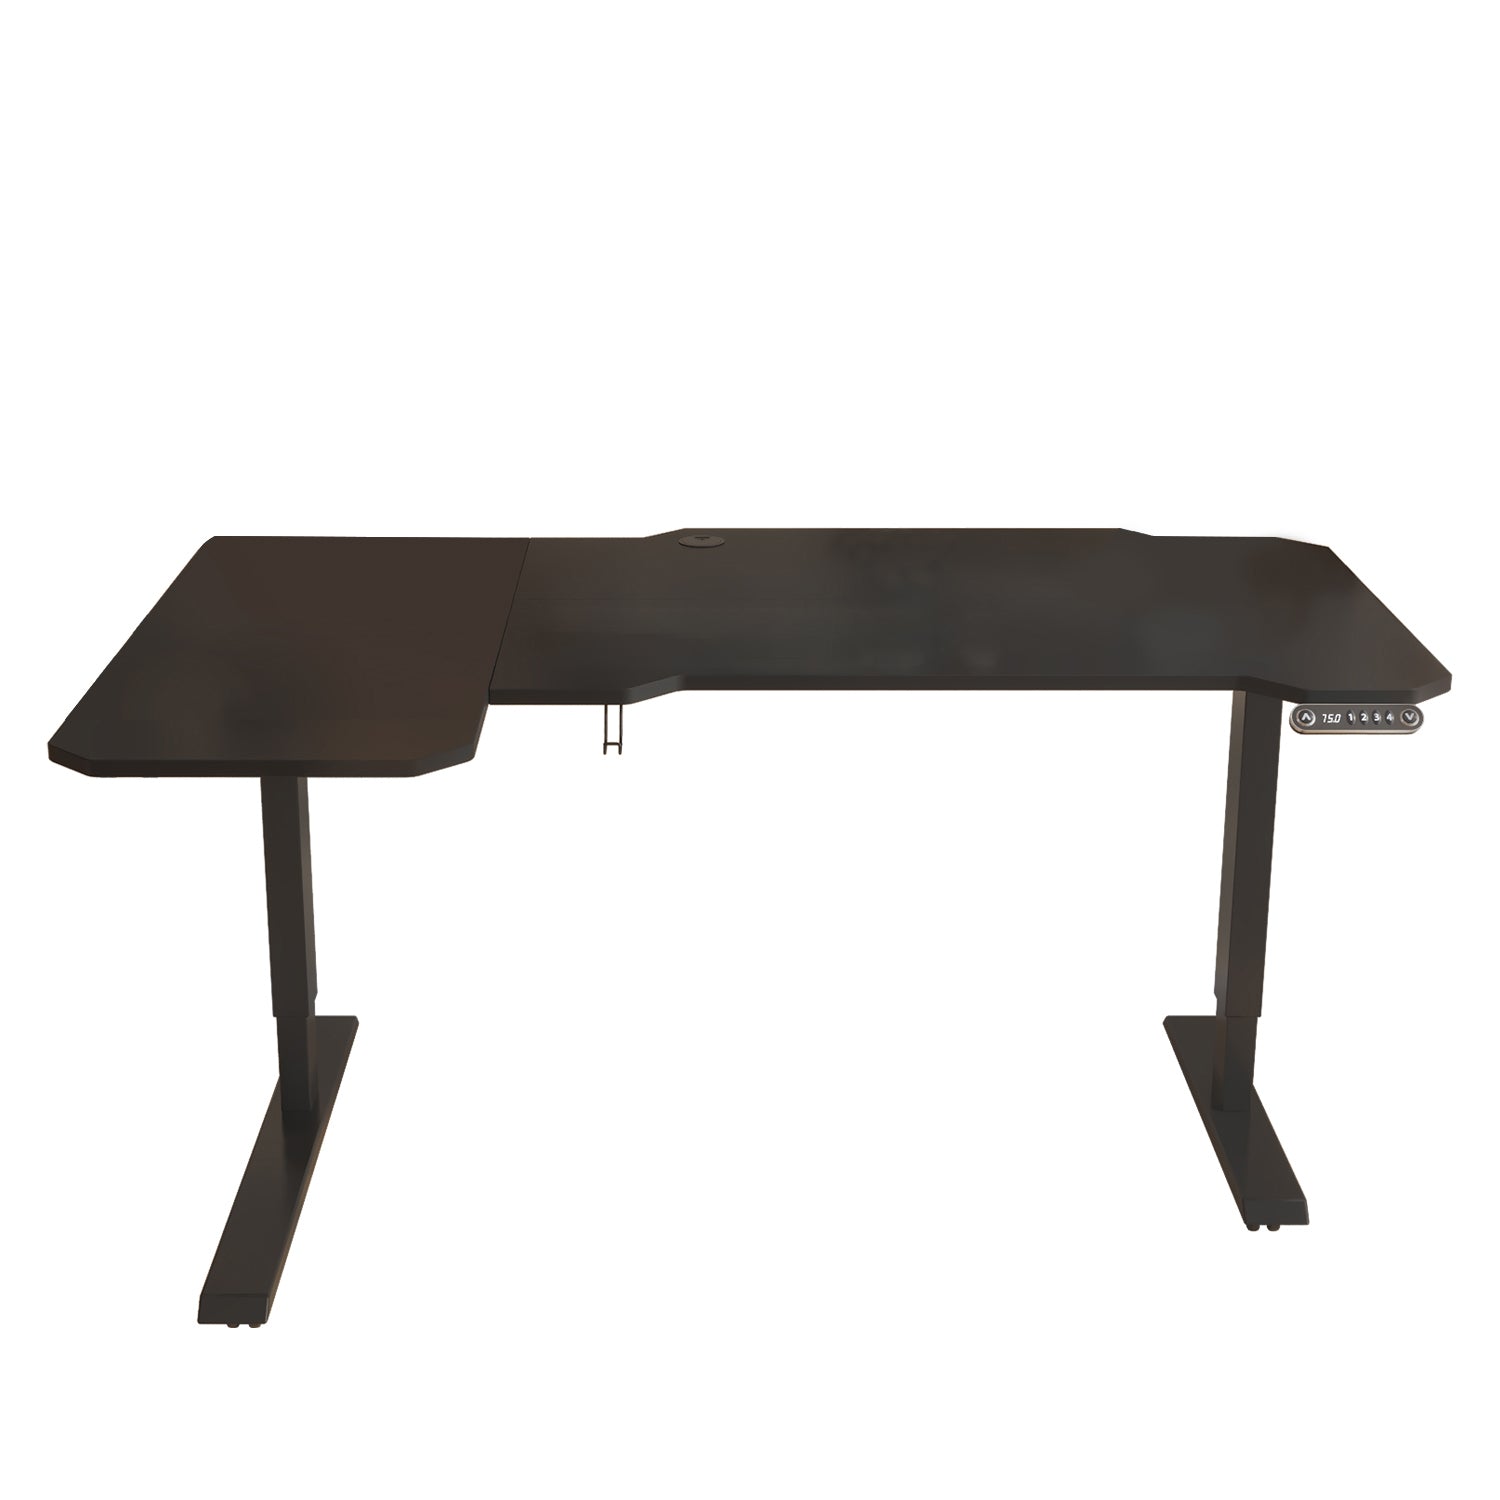 59" Adjustable Black L Shape Standing Desk